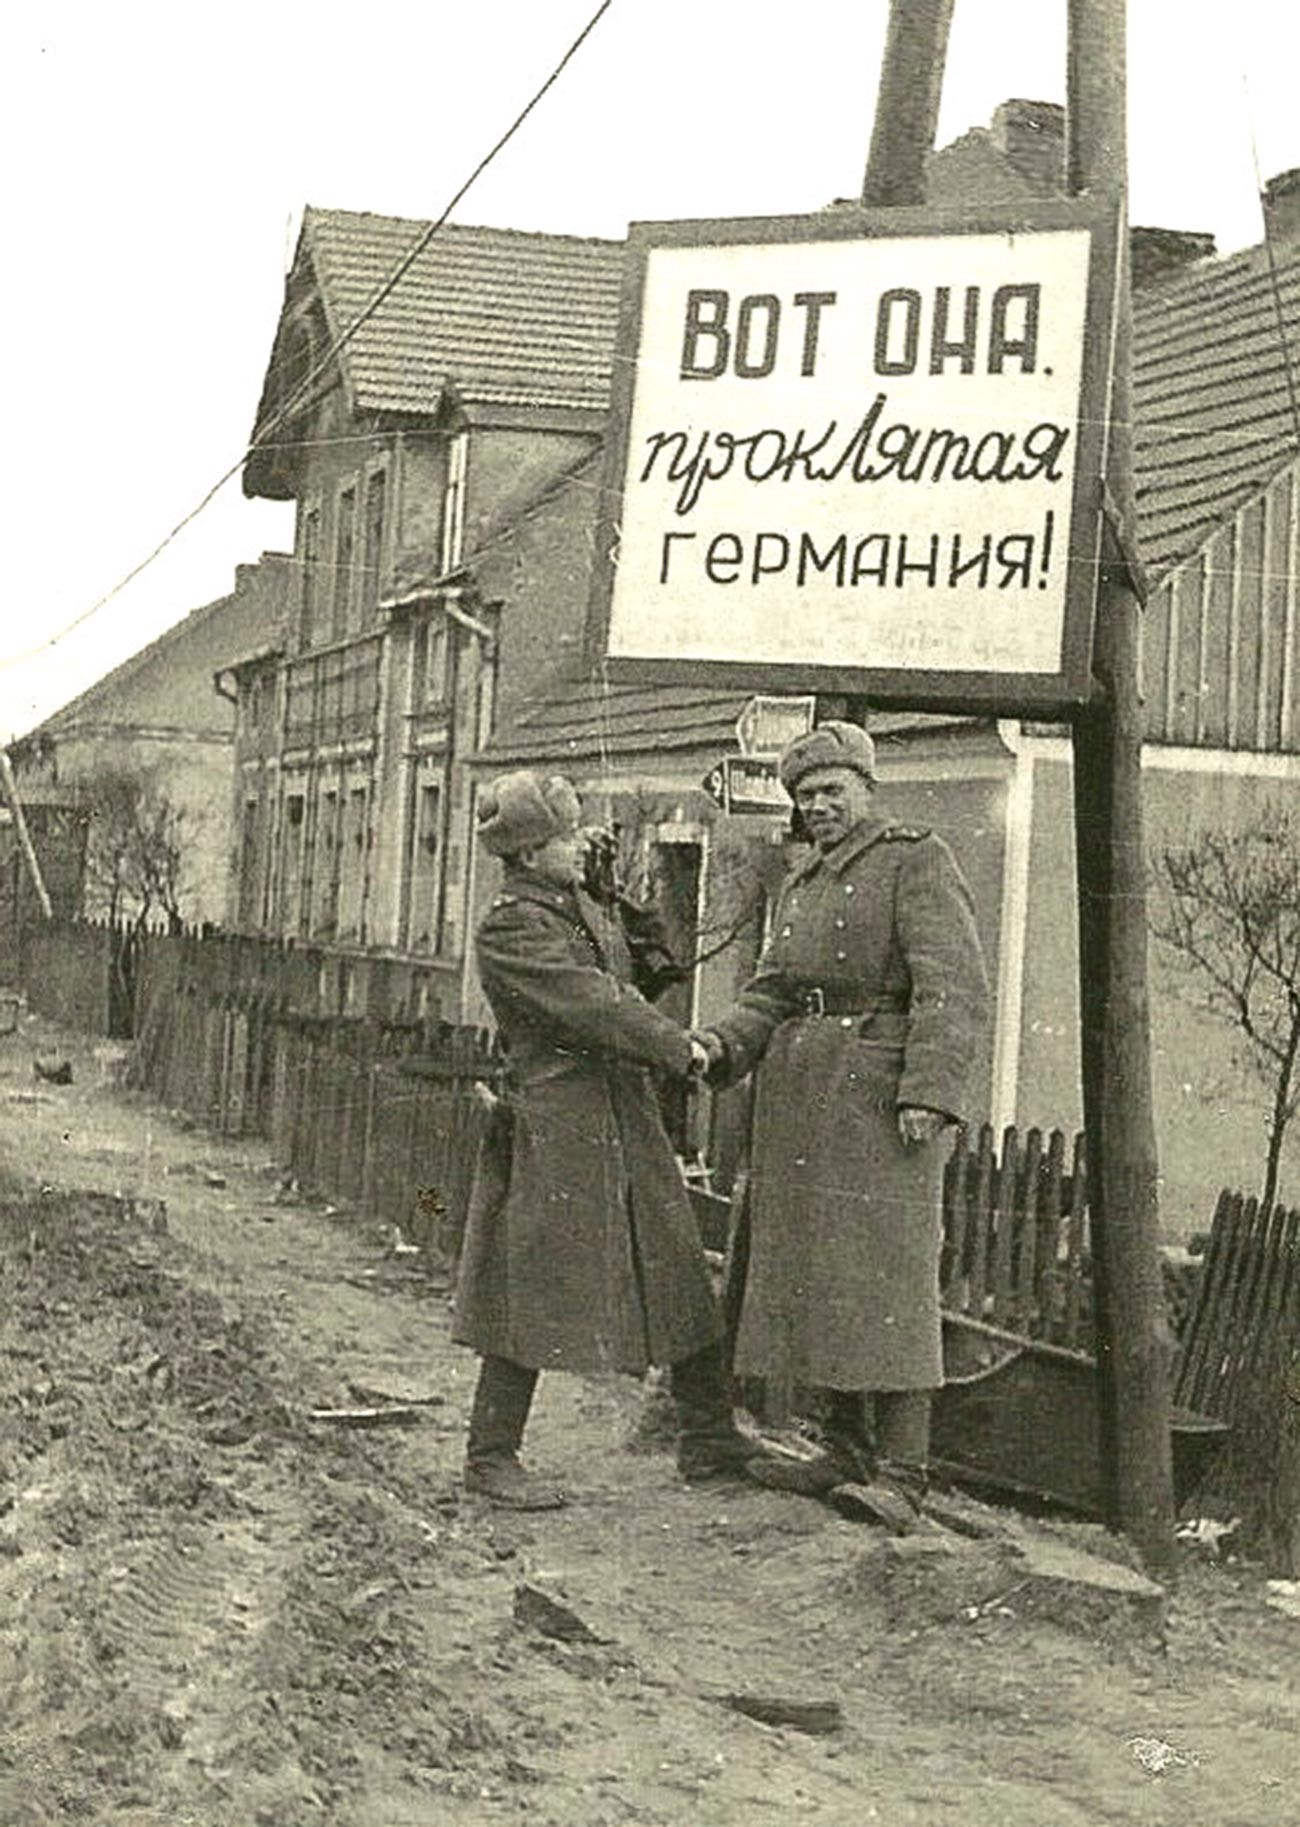 El letrero dice: “¡Aquí está, la maldita Alemania!” Los reporteros cinematográficos de guerra de guerra Iliá Arons (izquierda) y Borís Dementiev en la antigua frontera entre Polonia y Alemania durante el rodaje de Batallas en Pomerania en abril de 1945

